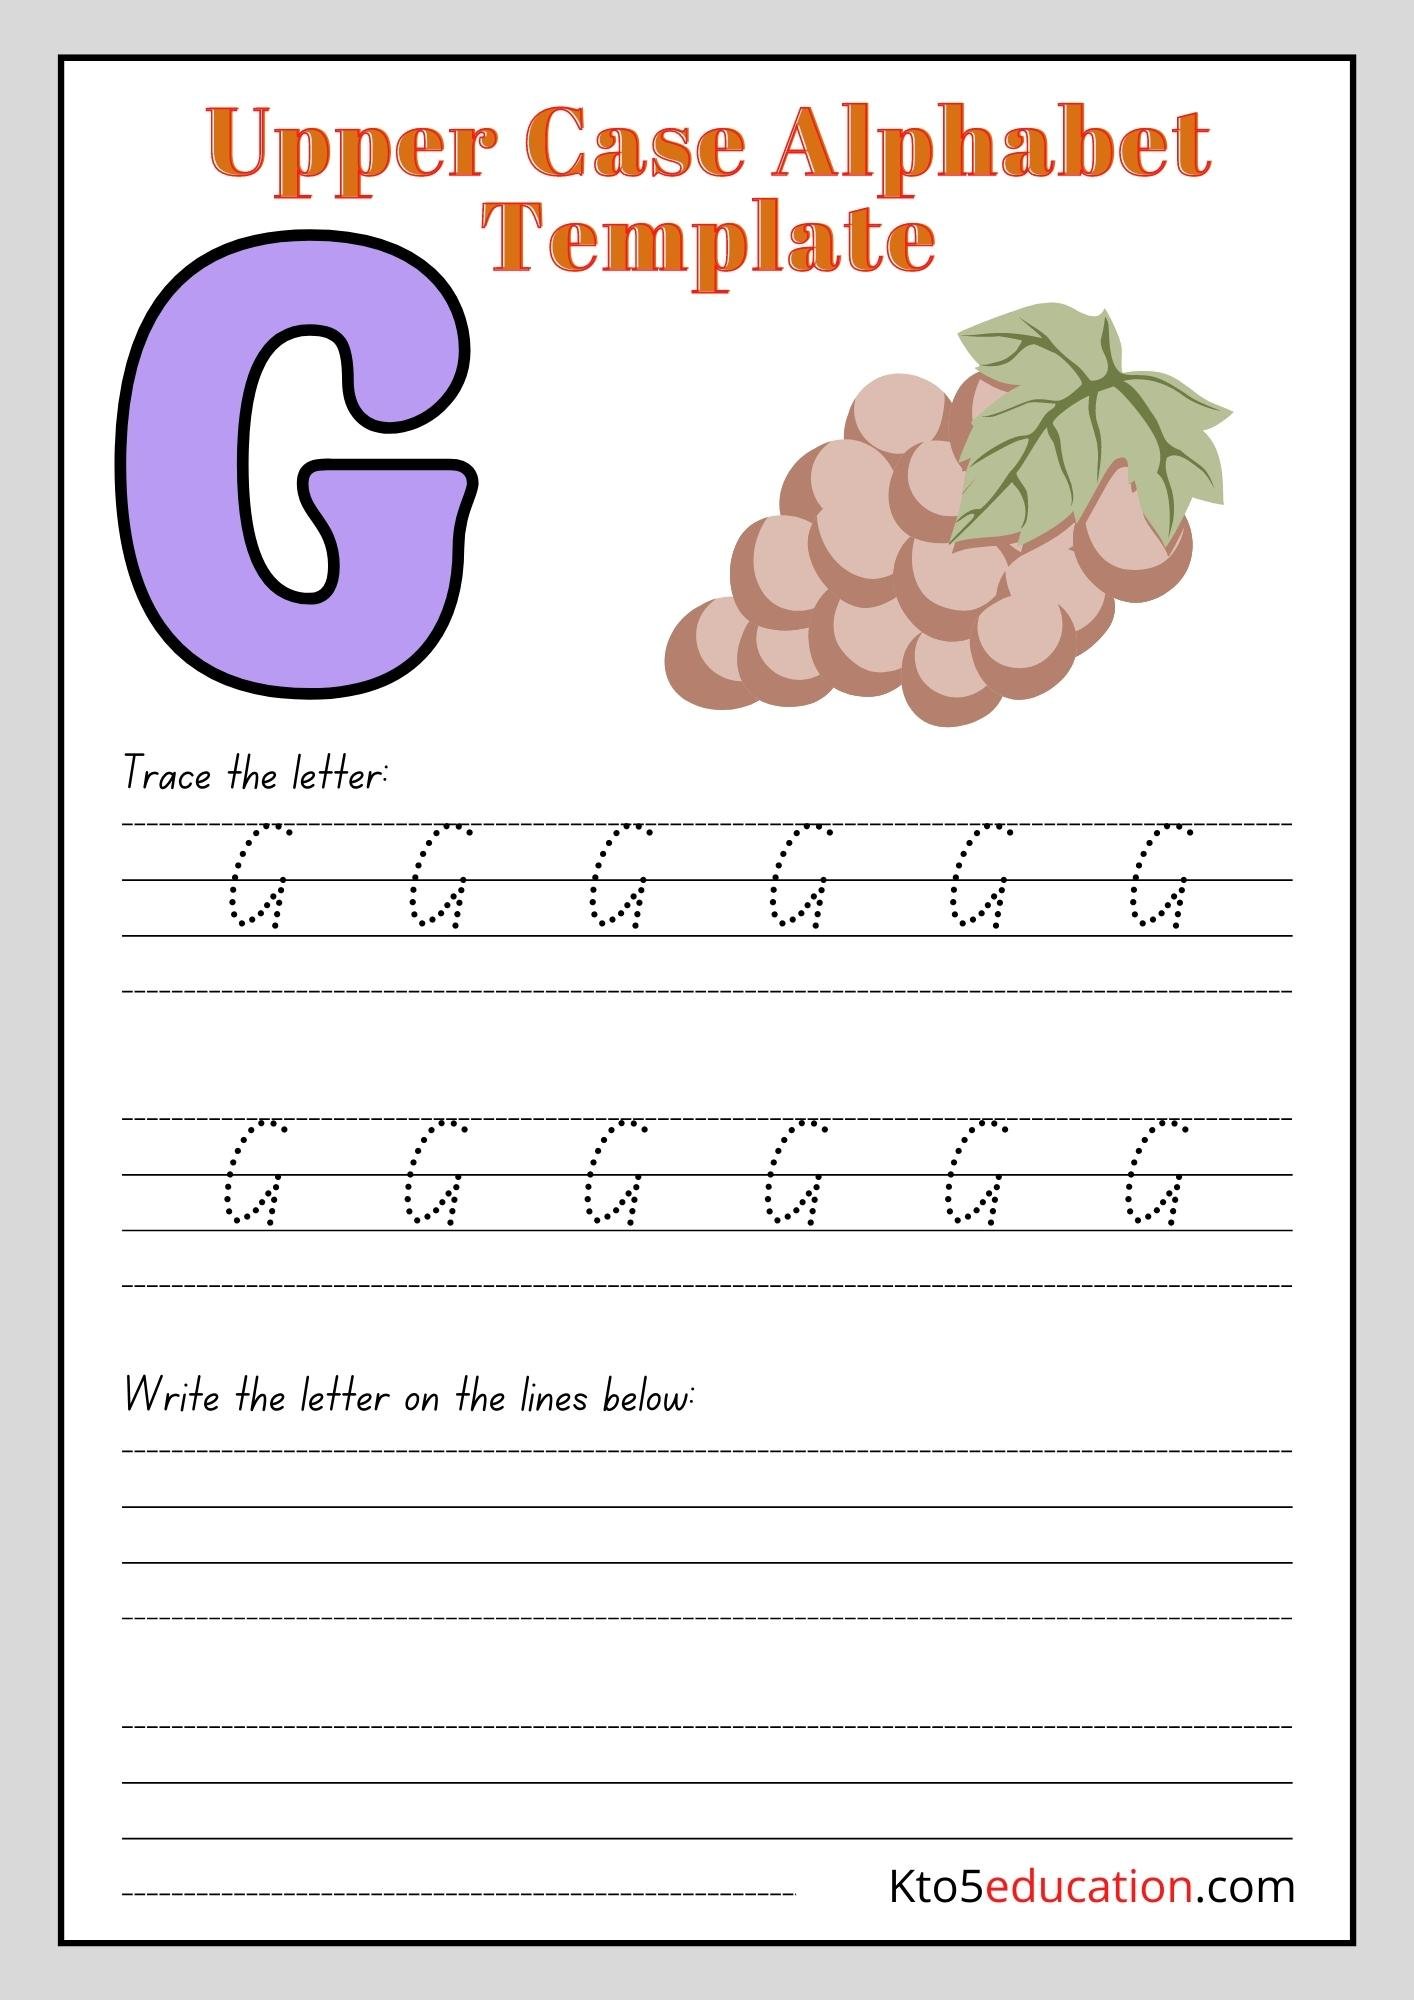 Printable Upper Case Alphabet Letter G